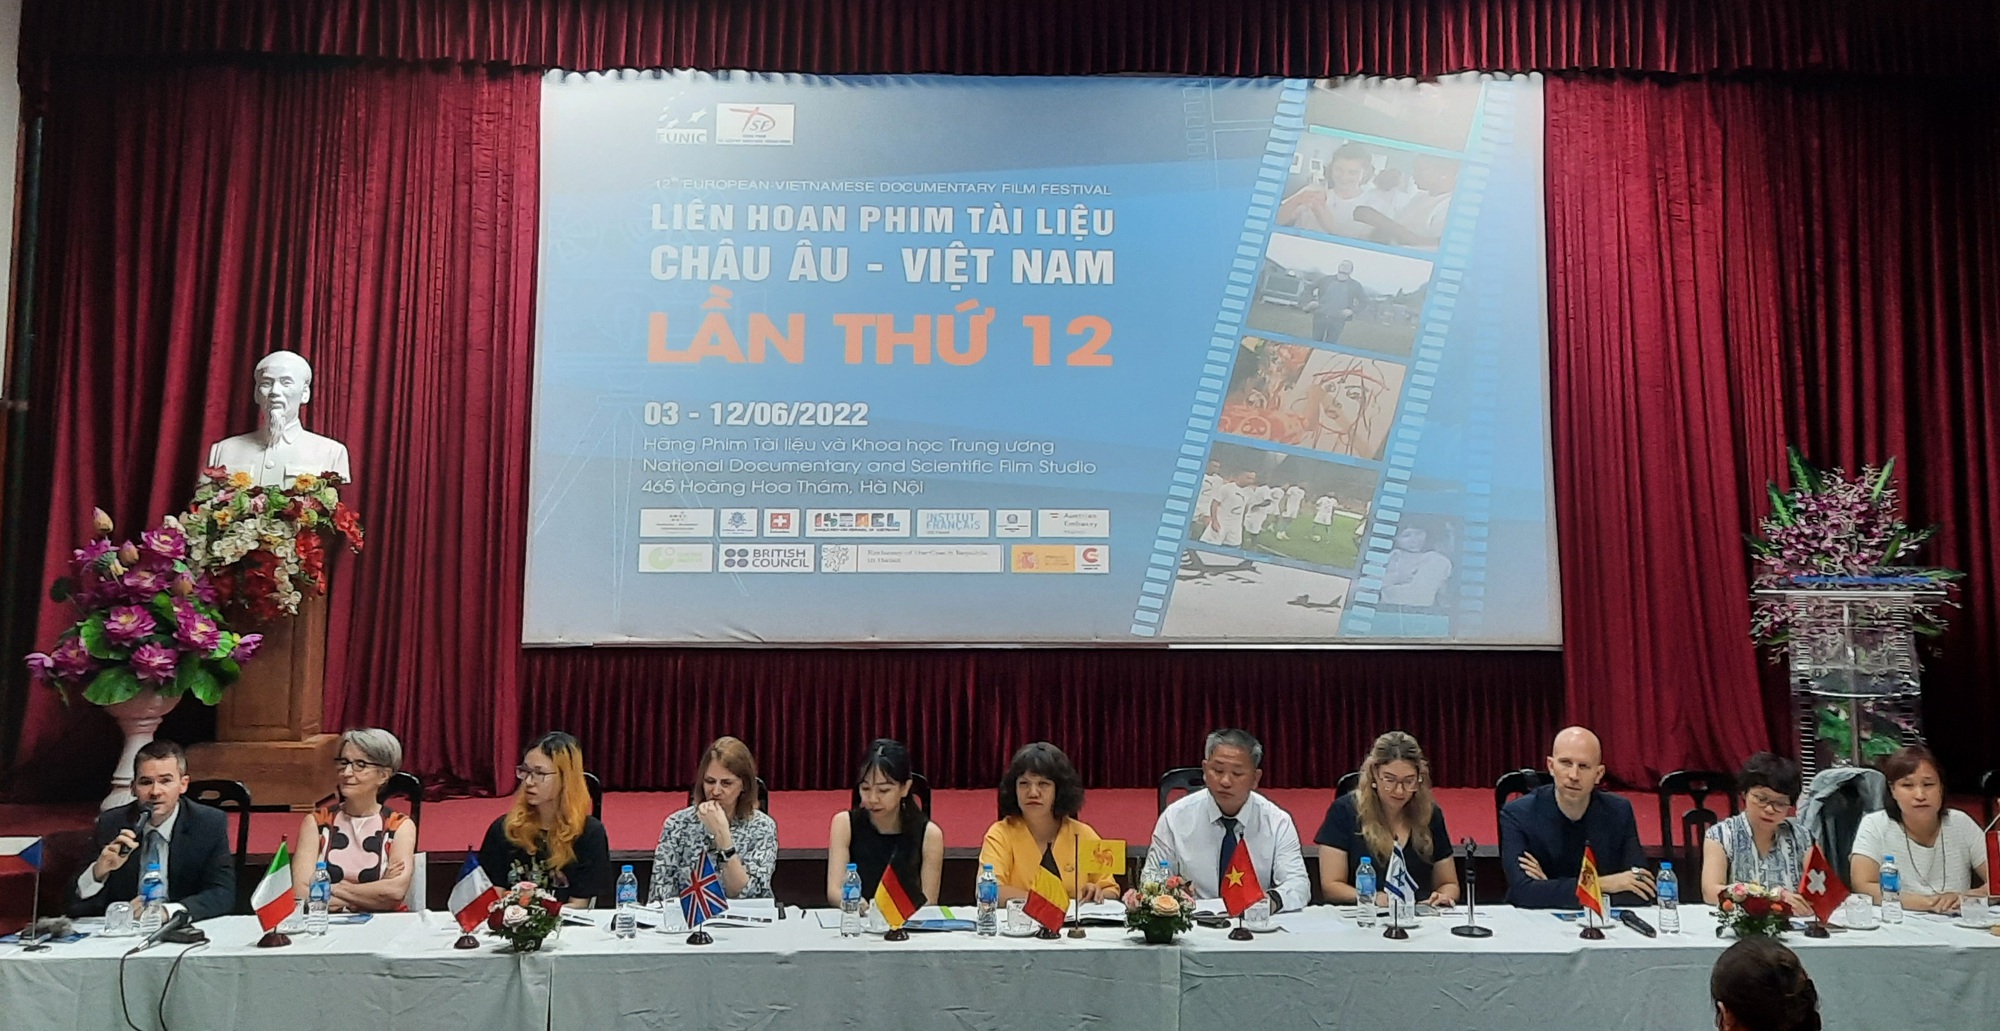 Lịch sử và ý nghĩa của Liên hoan phim tài liệu Châu Âu - Việt Nam